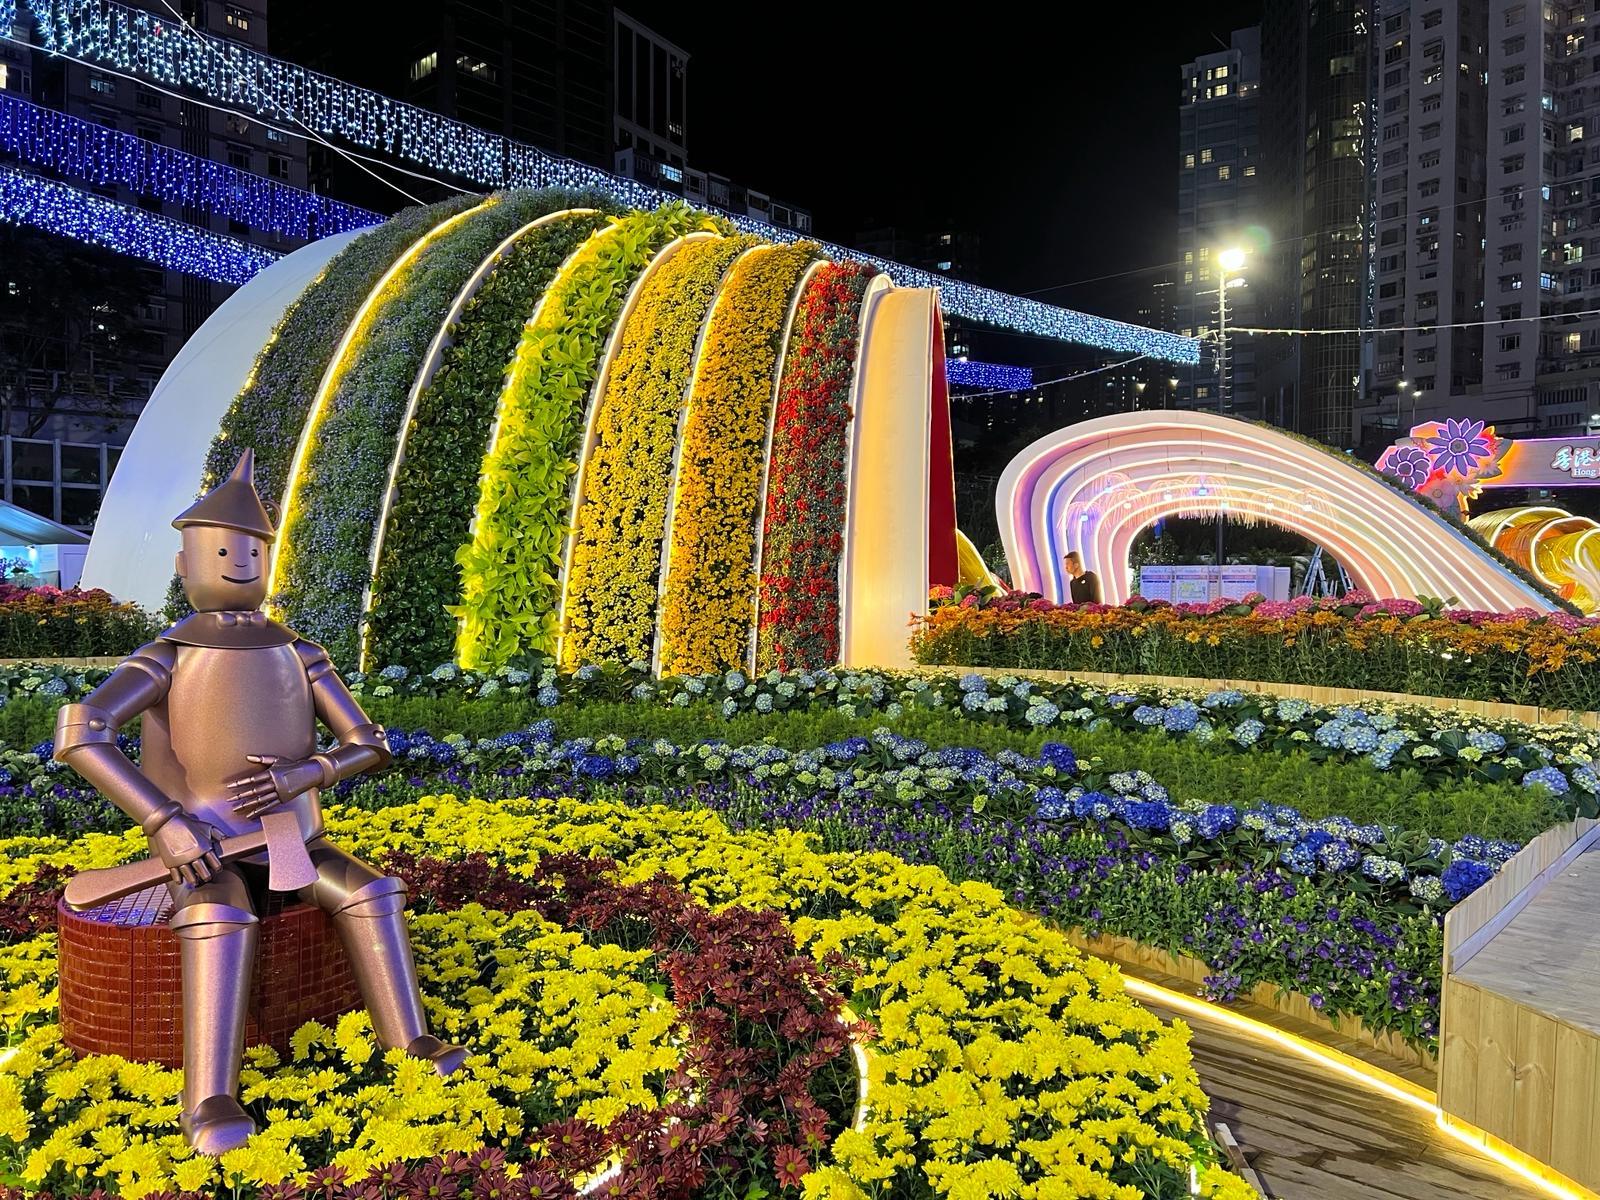 每年一度的赏花盛事香港花卉展览今日（三月十五日）在维多利亚公园开幕，展出约四十二万株花卉，包括约四万株主题花香彩雀。图为《绿野仙踪》园圃，在夜幕下别有一番景致。